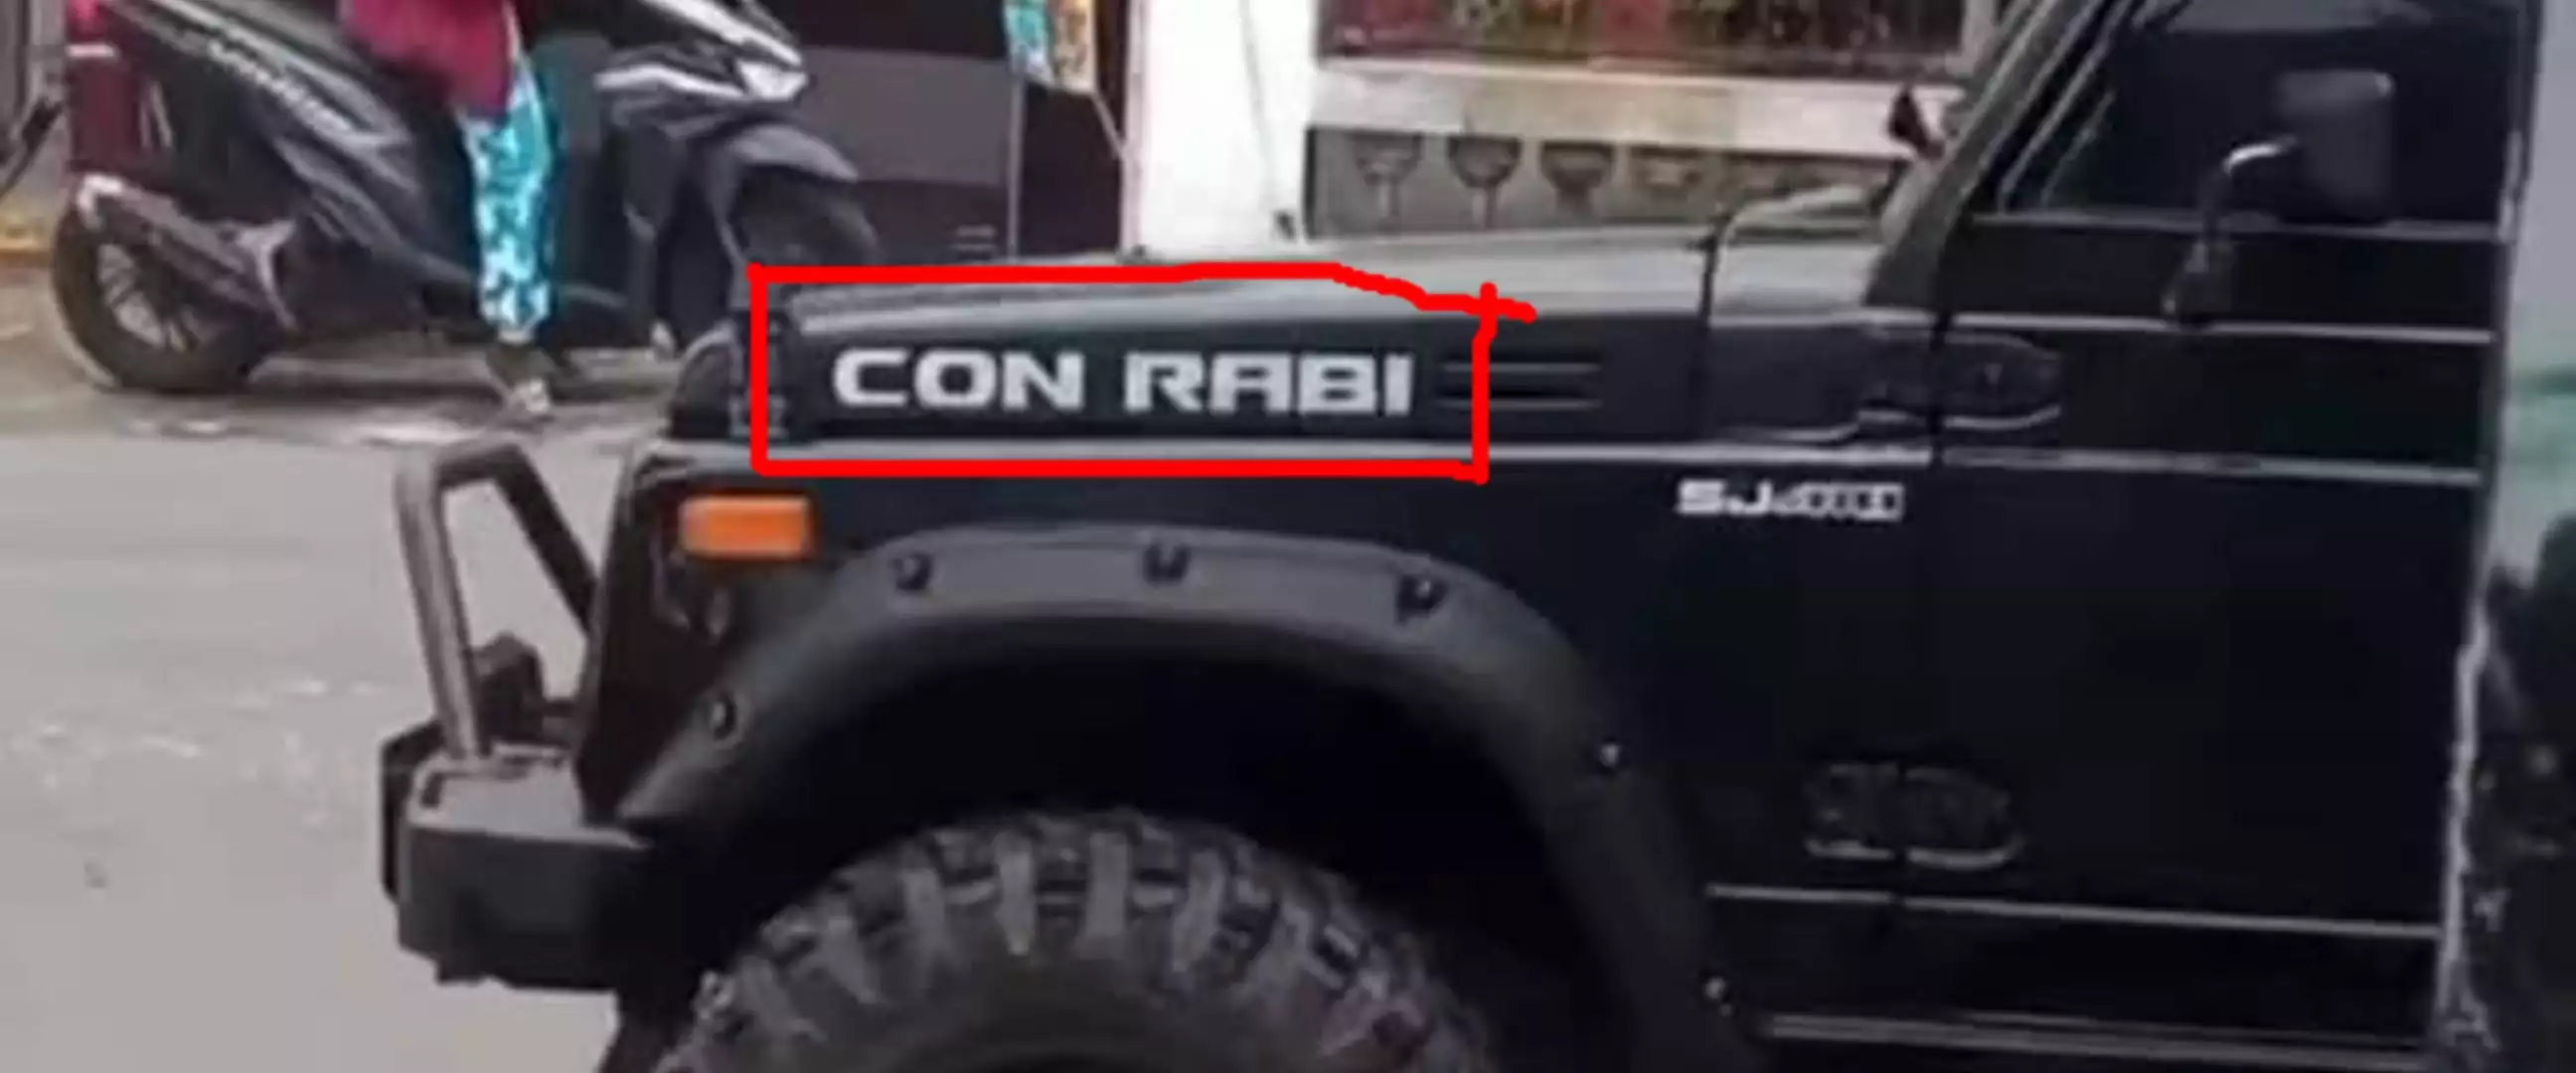 11 Tulisan nyeleneh di mobil ini bikin pengendara gagal fokus, Rubicon jadi 'con rabi'